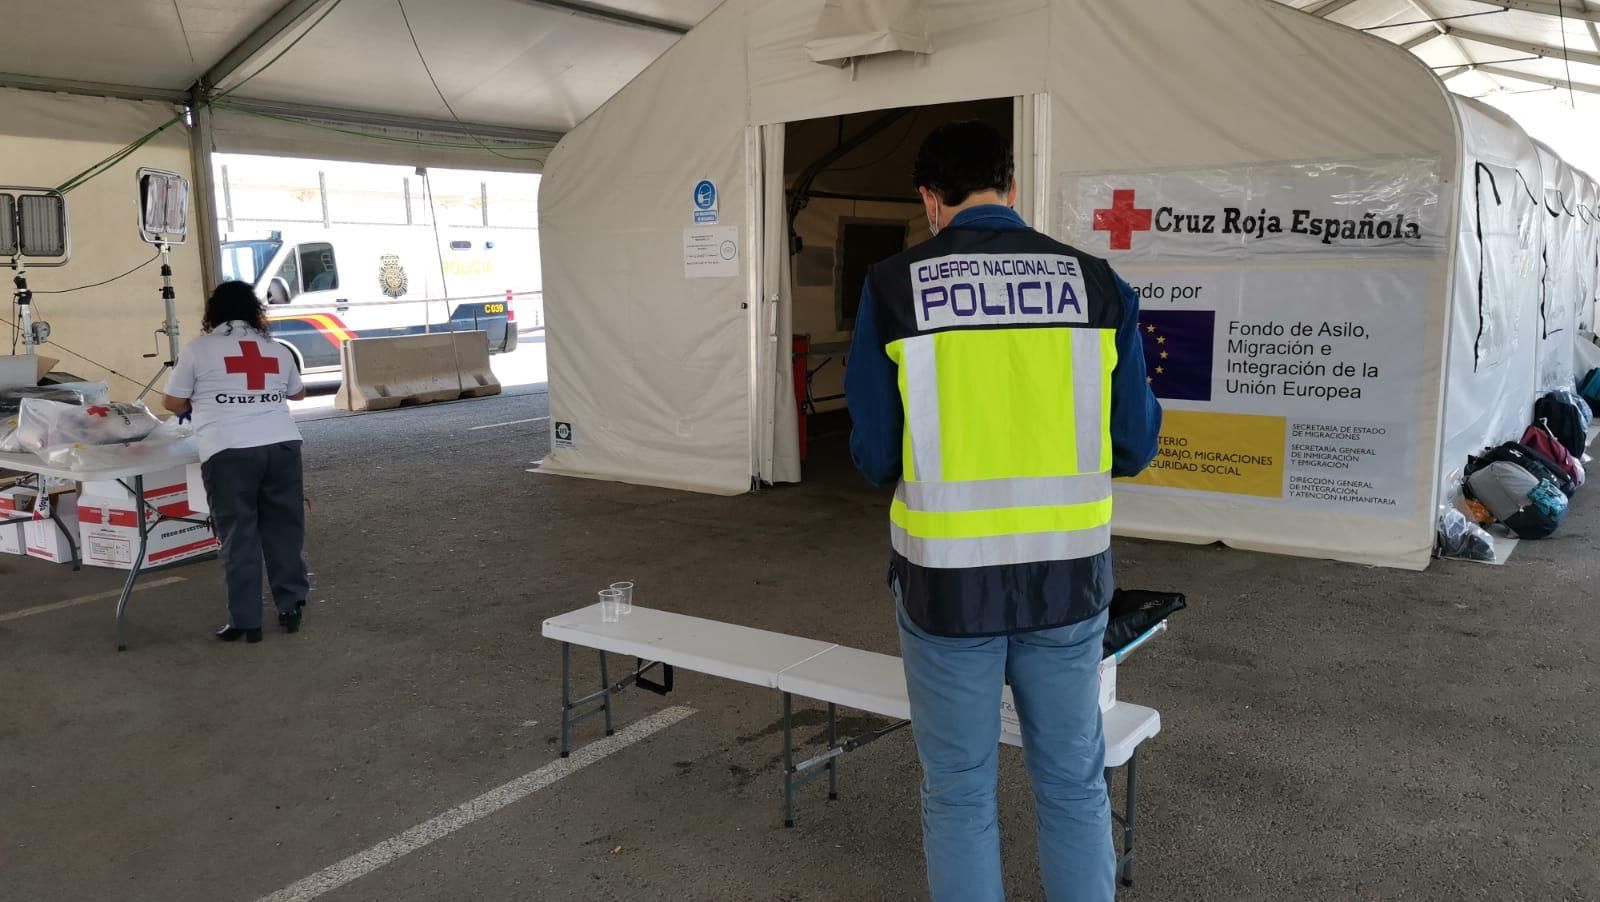 Llegan cinco pateras con 77 personas a la provincia de Alicante en menos de 24 horas